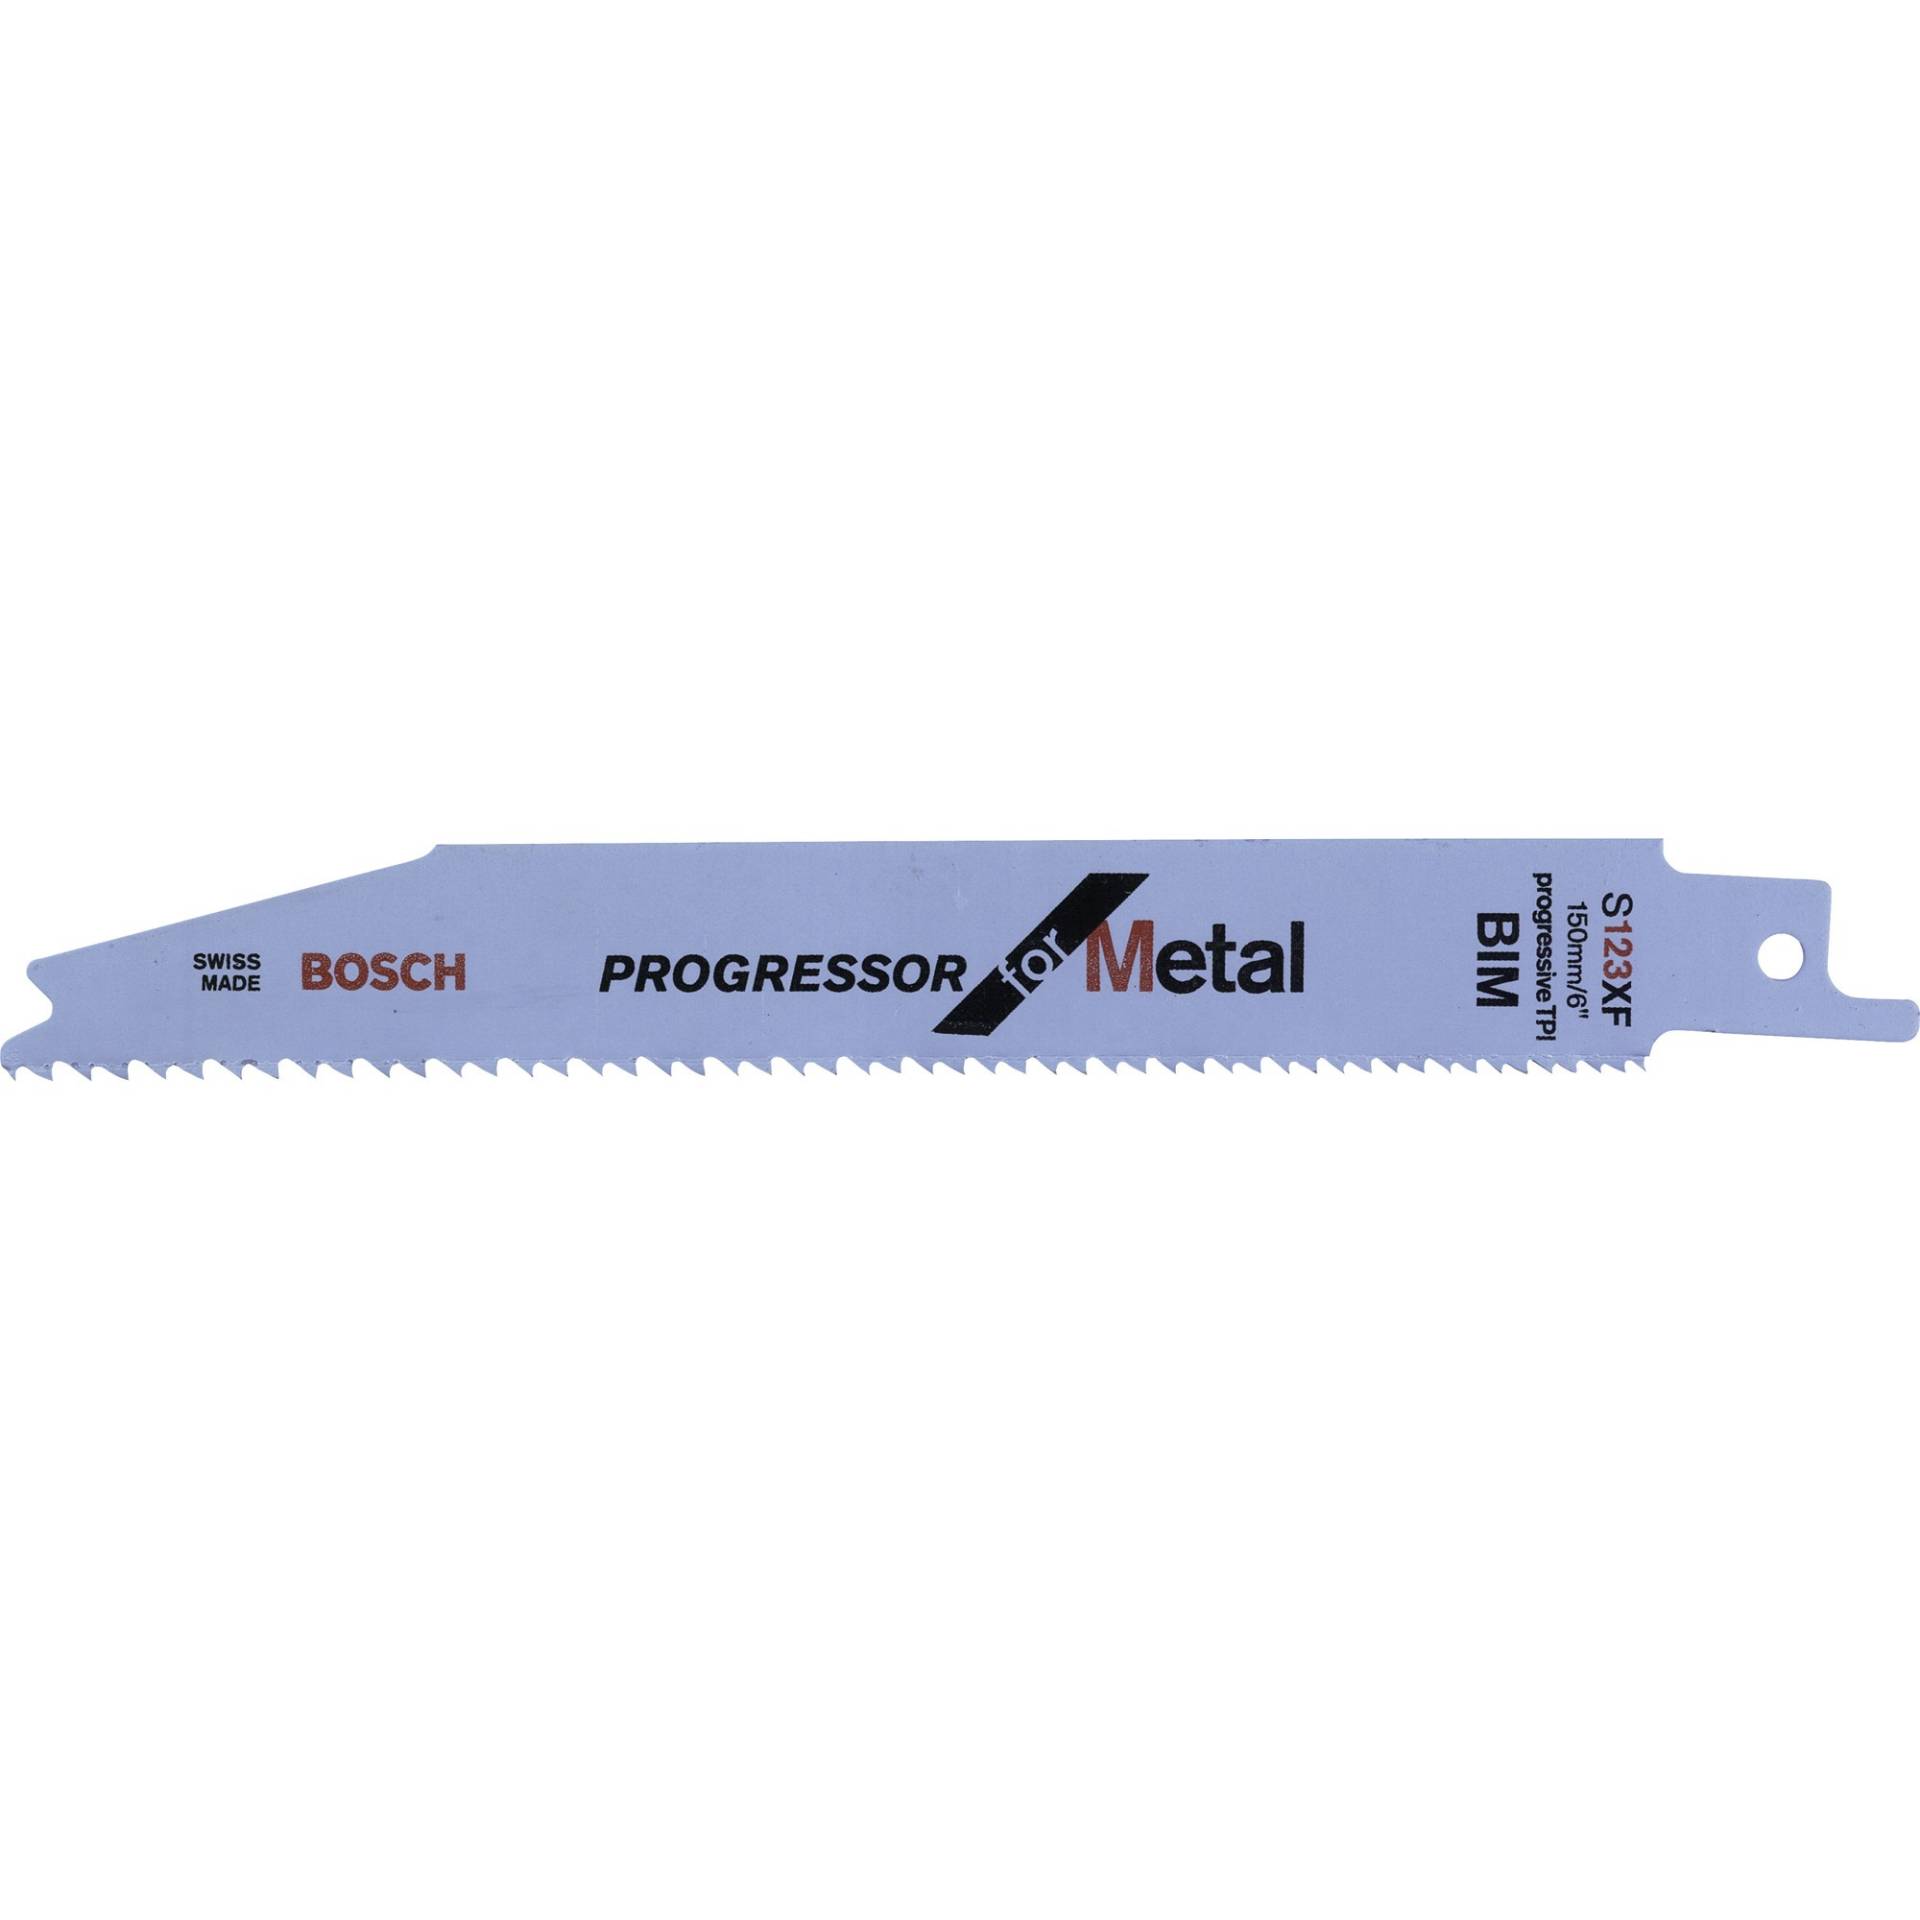 Säbelsägeblatt S 123 XF Progressor for Metal, 5 Stück von Bosch